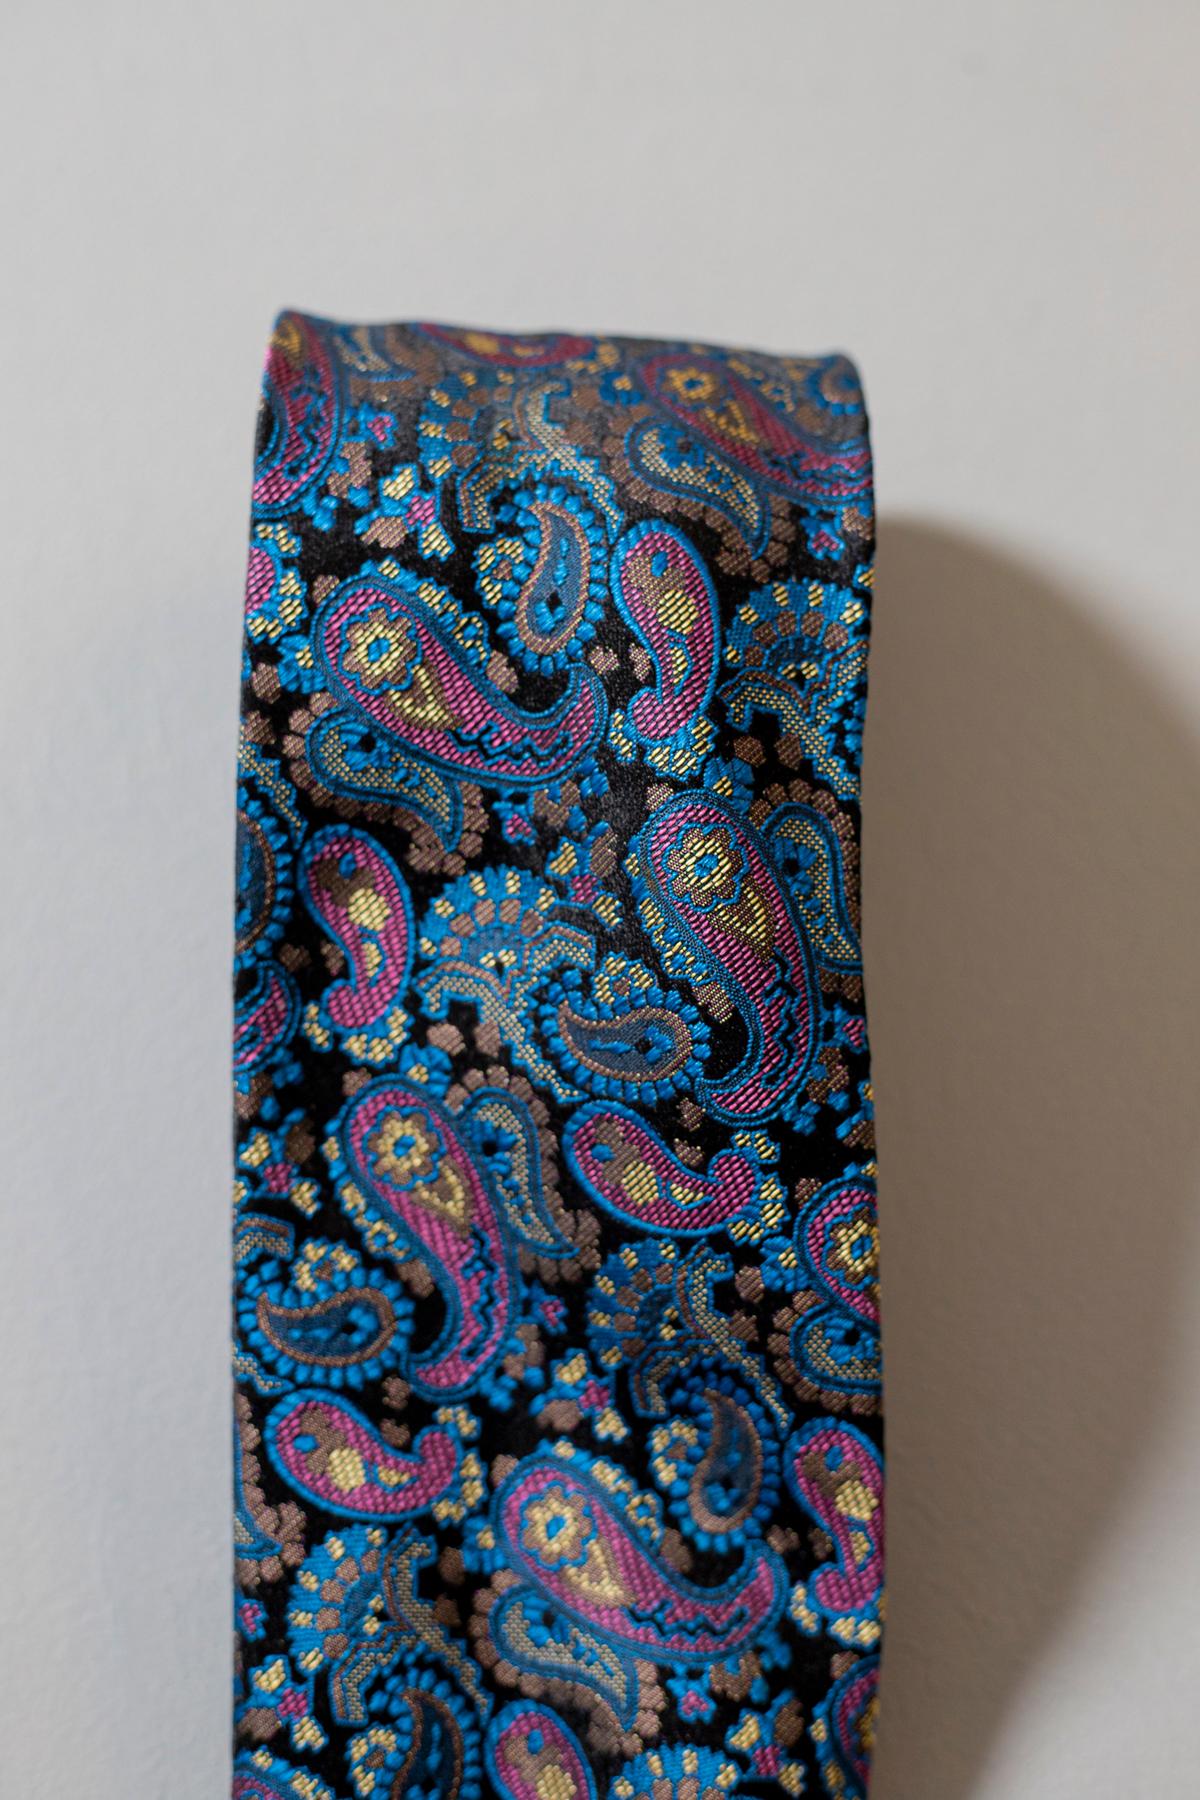 Une cravate au caractère inimitable, conçue par le célèbre designer italien Gianni Versace. Il est fabriqué en soie, c'est pourquoi il est doux et de qualité. Une cravate intemporelle, décorée de motifs paisley dans des tons de bleu et de violet.